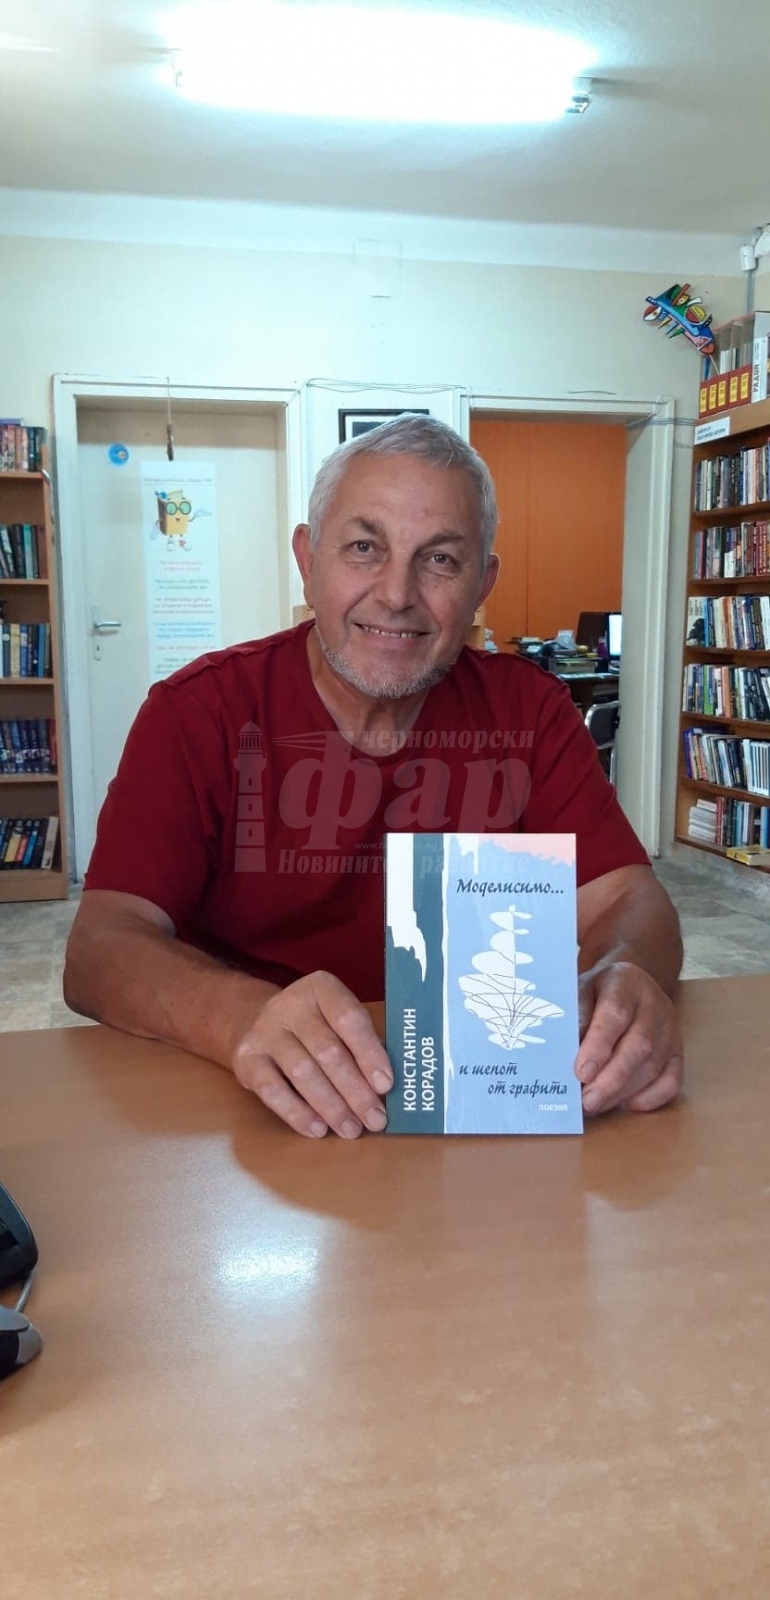 Бургаски творци подаряват книгите си на читалище